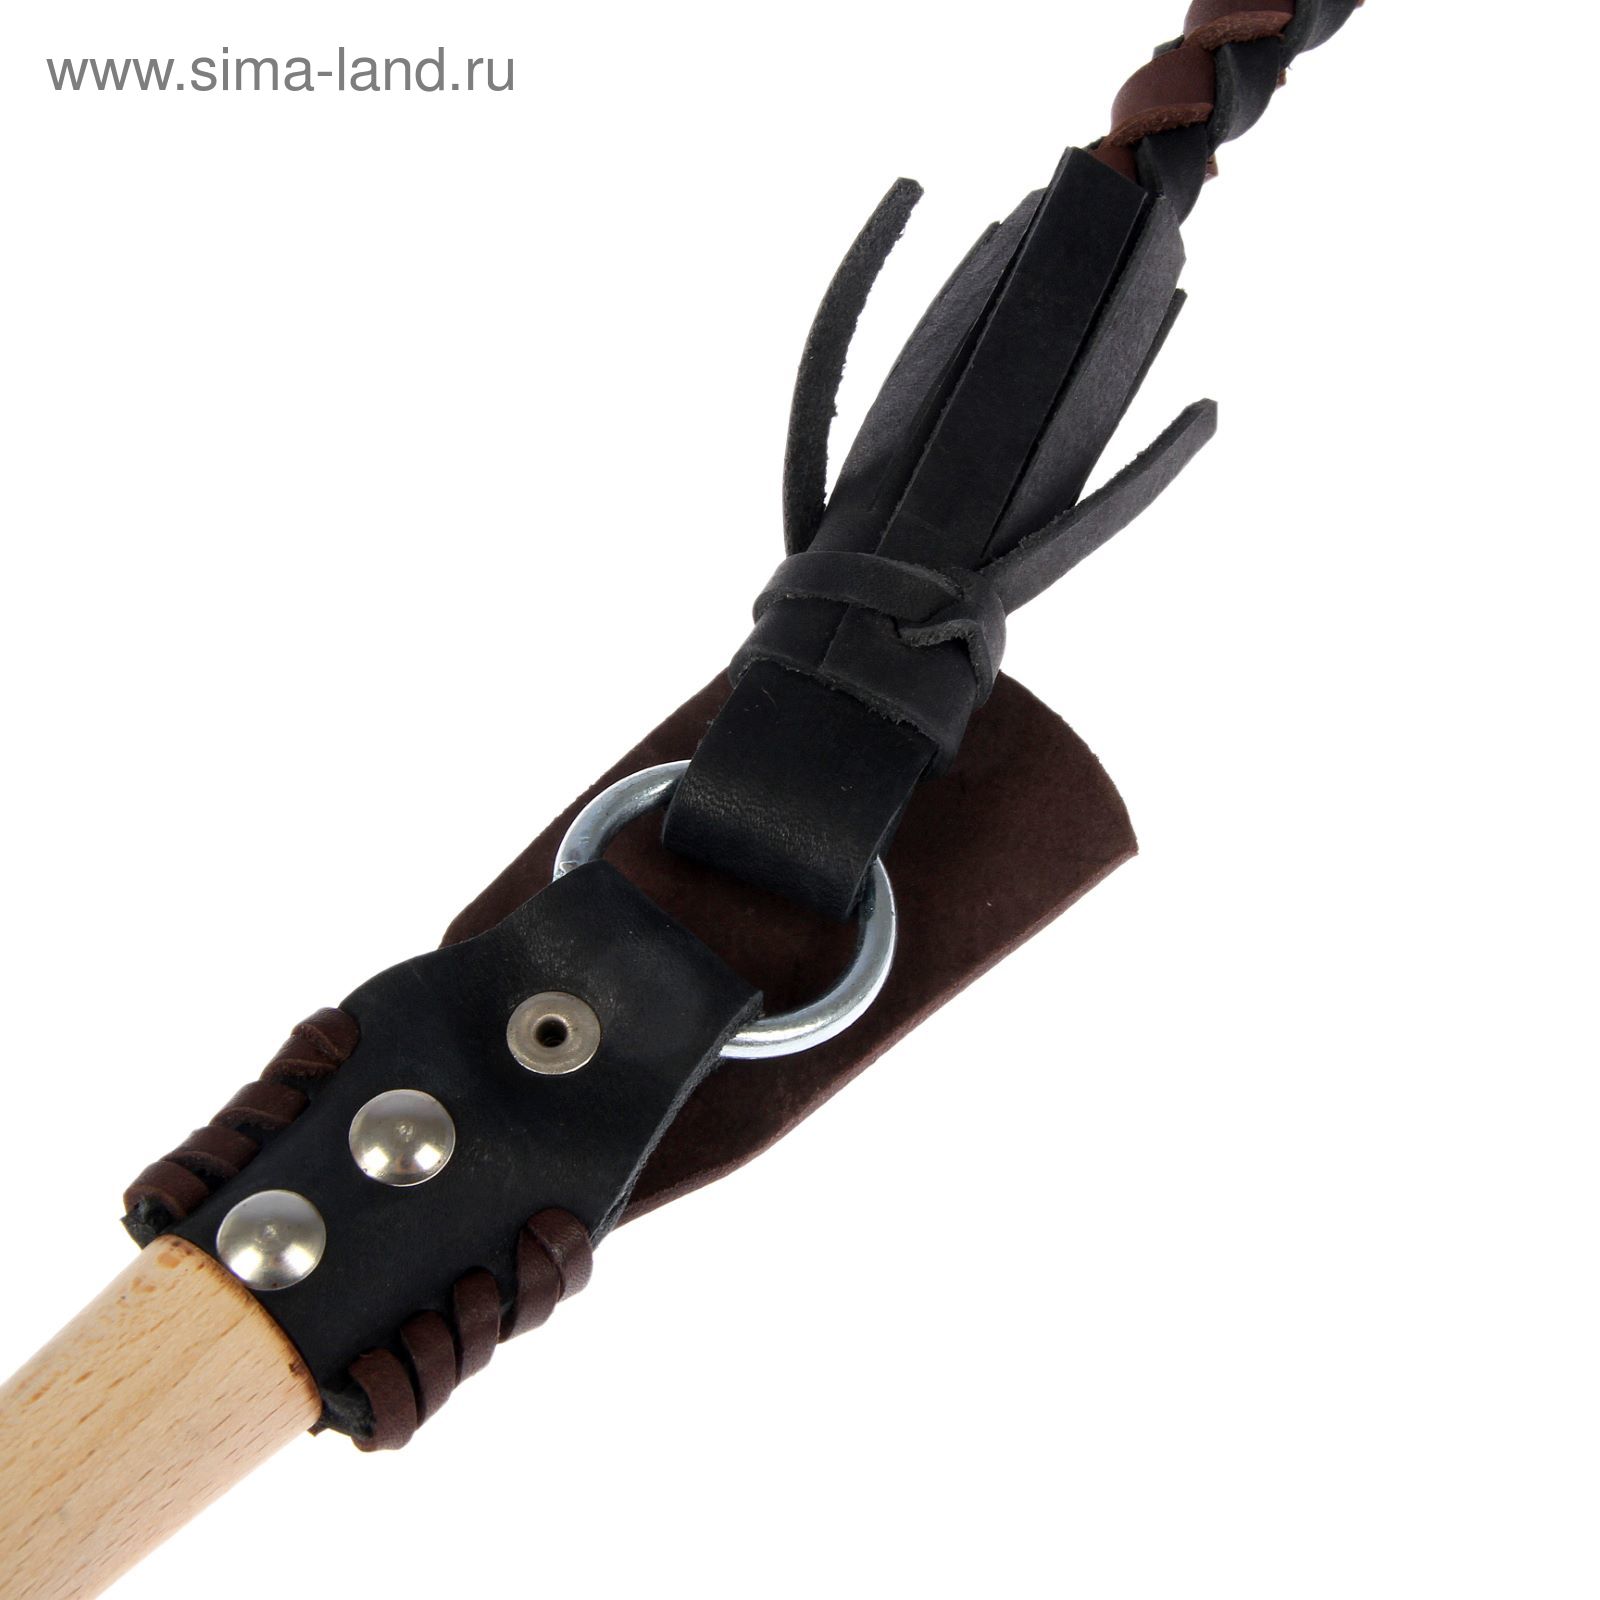 Нагайка Донская, ручка оплетена кожей, черная с коричневым